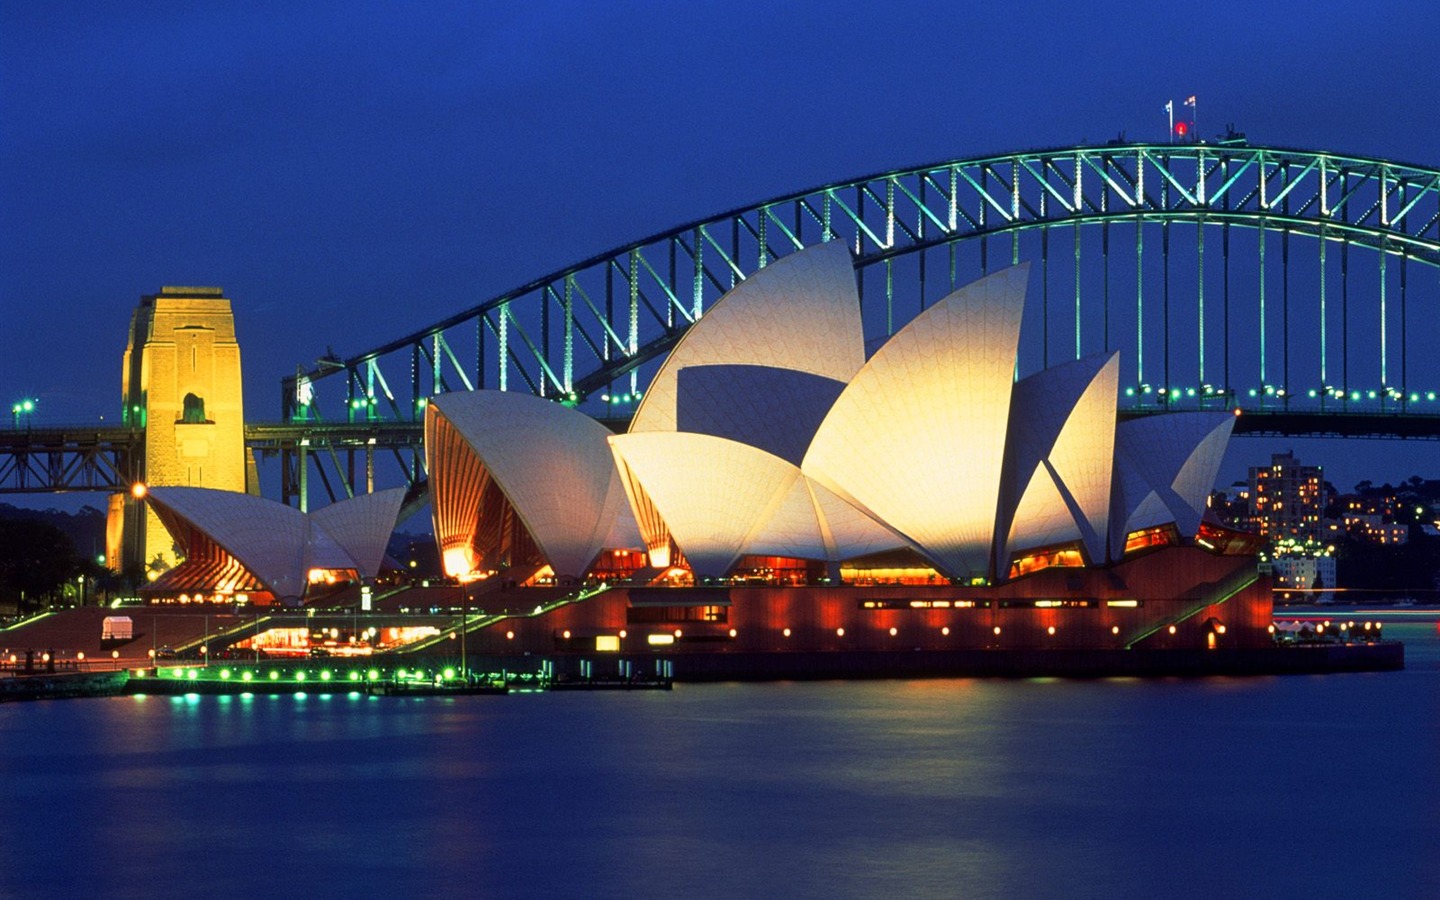 澳大利亚特色美丽风景16 - 1440x900